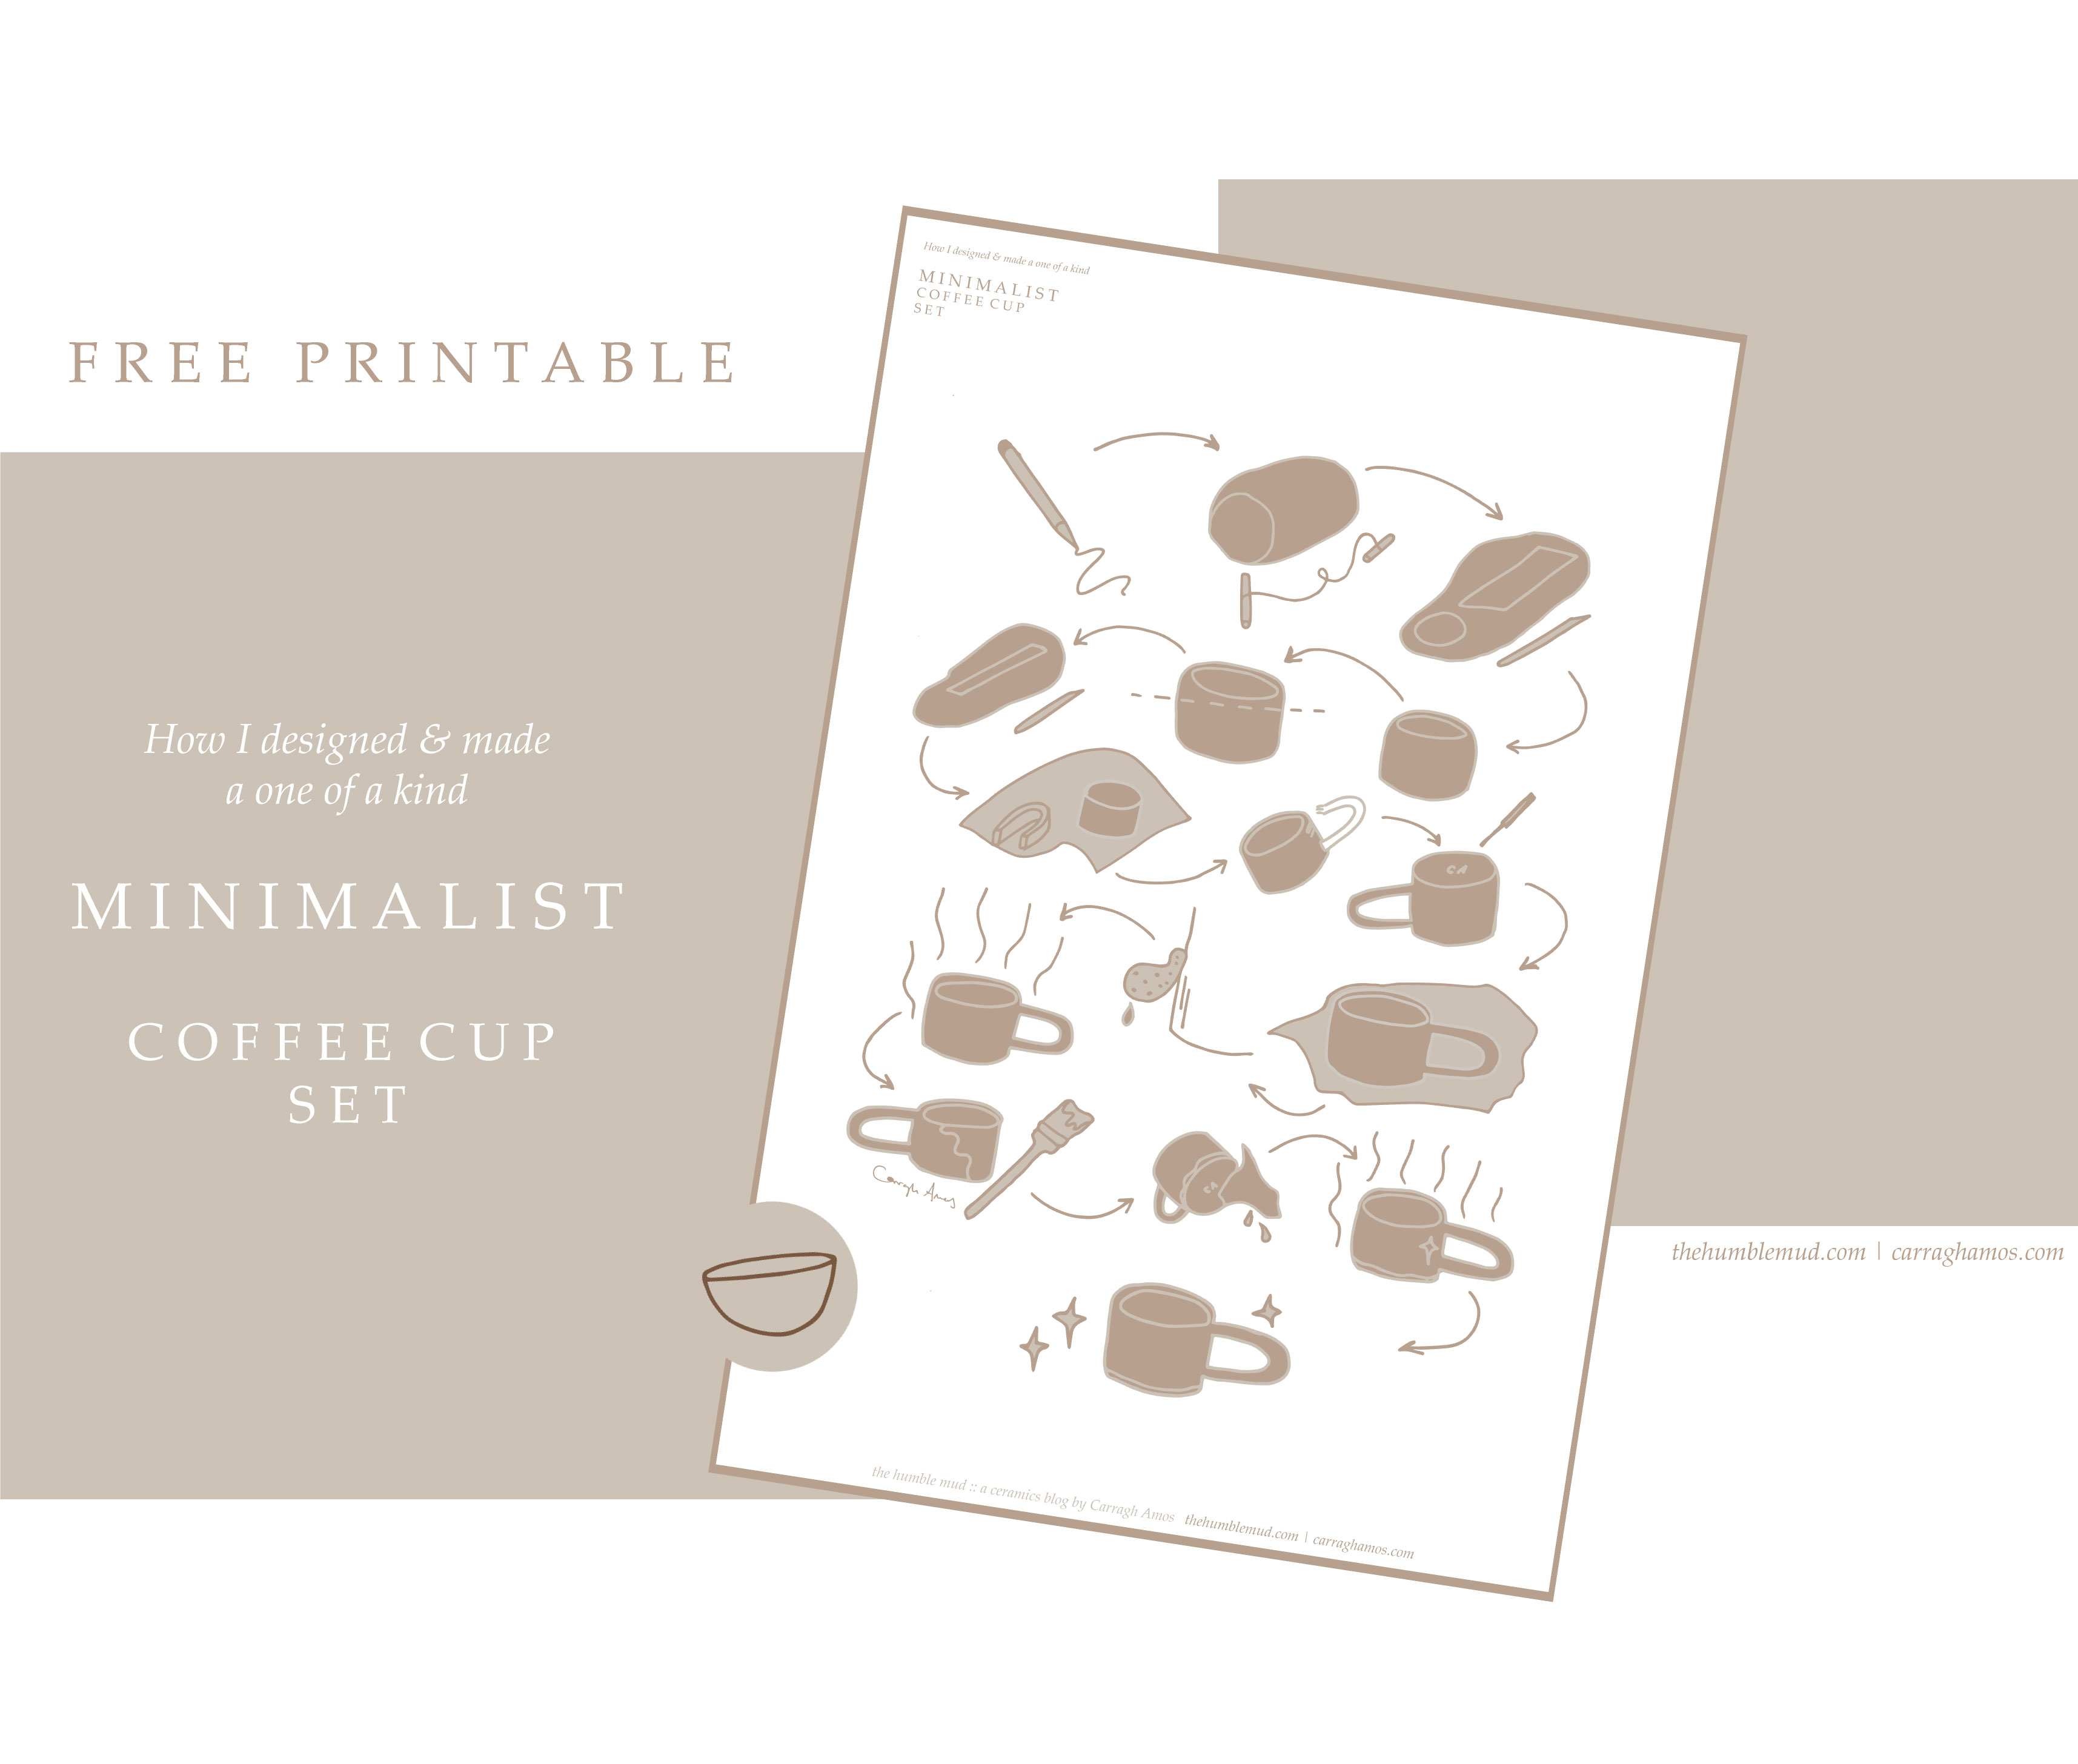  volný tisk: Jak vyrobit ručně vyrobený hrnek postavený hrnek zdarma pro tisk. Ilustrovaný minimalistický šálek kávy set instrukce.